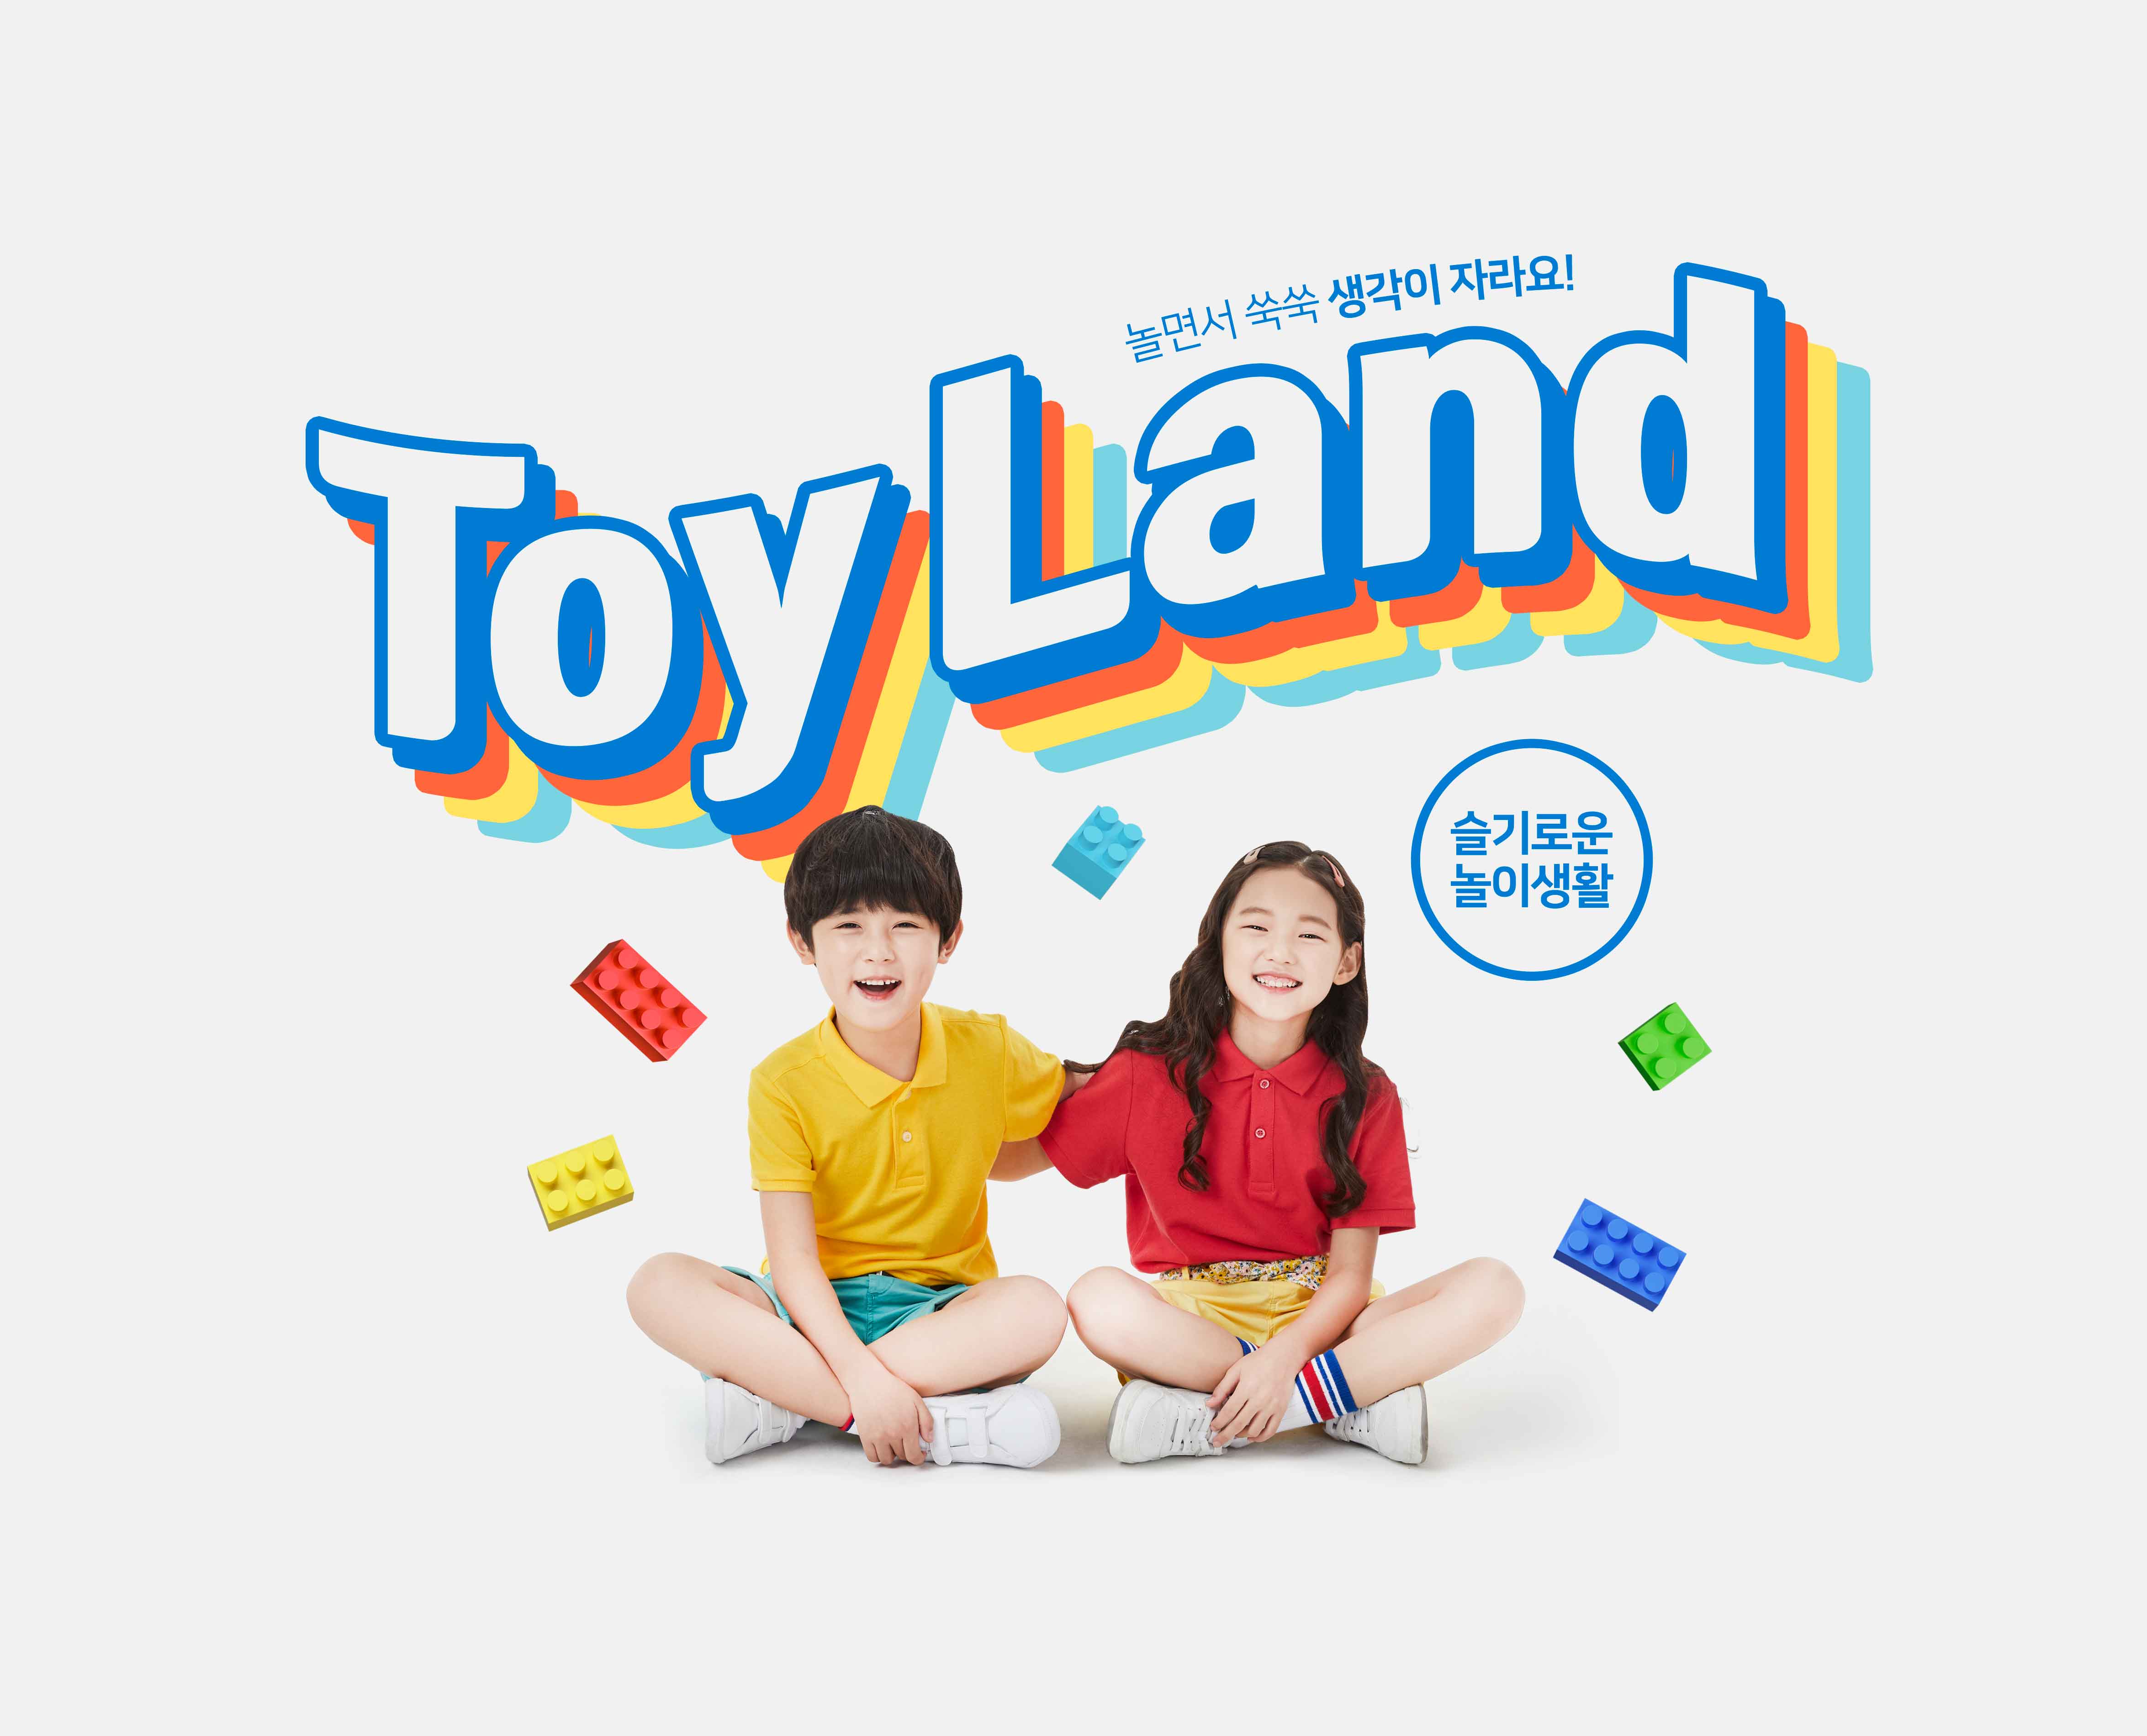 益智积木玩具游戏儿童成长主题海报PSD素材非凡图库精选韩国素材插图